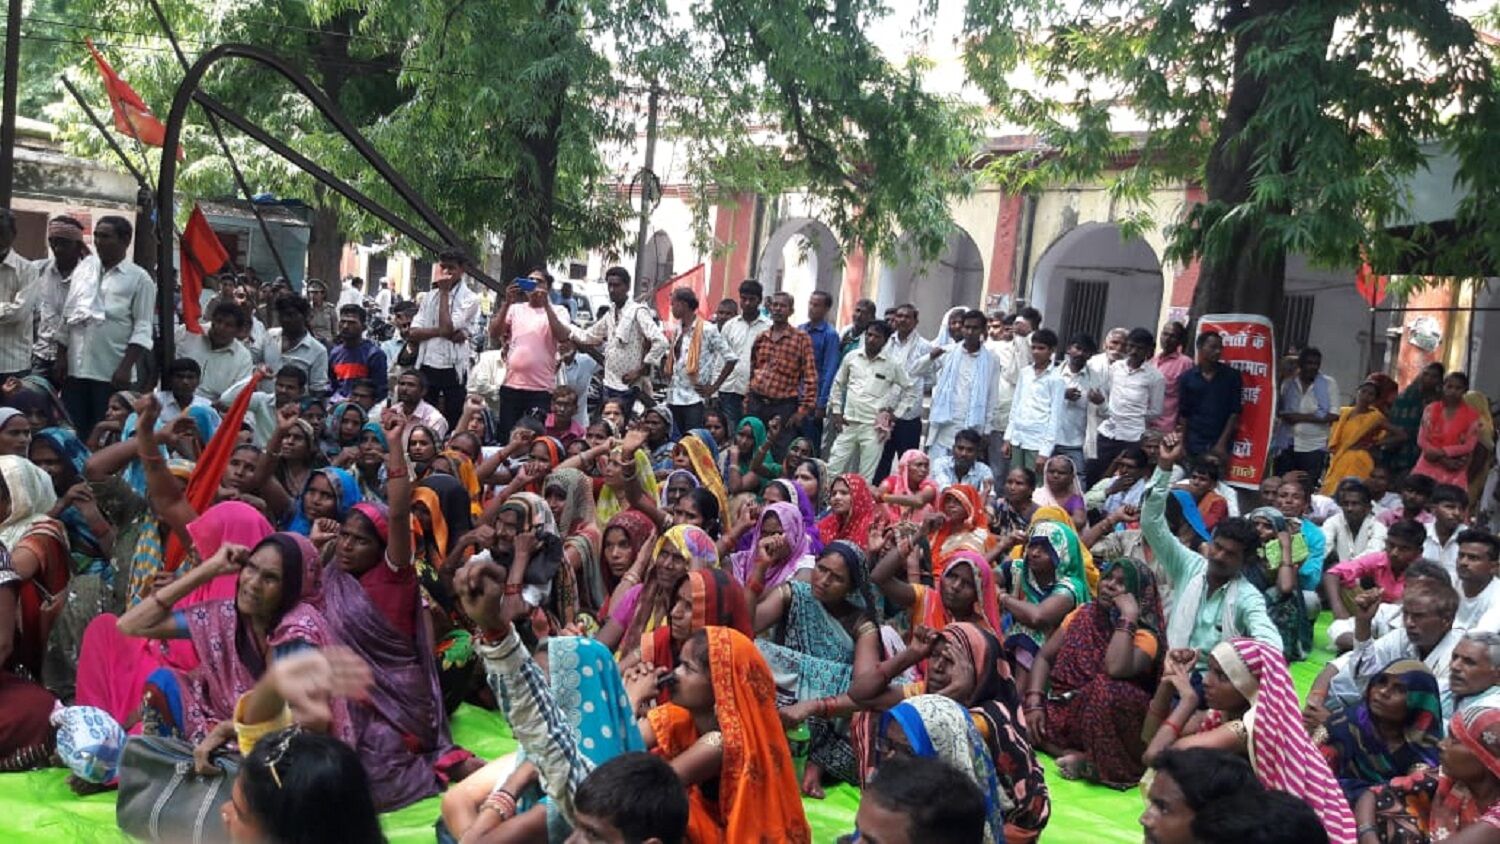 Lucknow news : दलितों पर जानलेवा हमला करने वाले सवर्ण दबंगों के खिलाफ रिपोर्ट लिखाने गये माले नेता और कार्यकर्ताओं को पुलिस ने भेजा जेल, रिहाई के लिए जोरदार प्रदर्शन